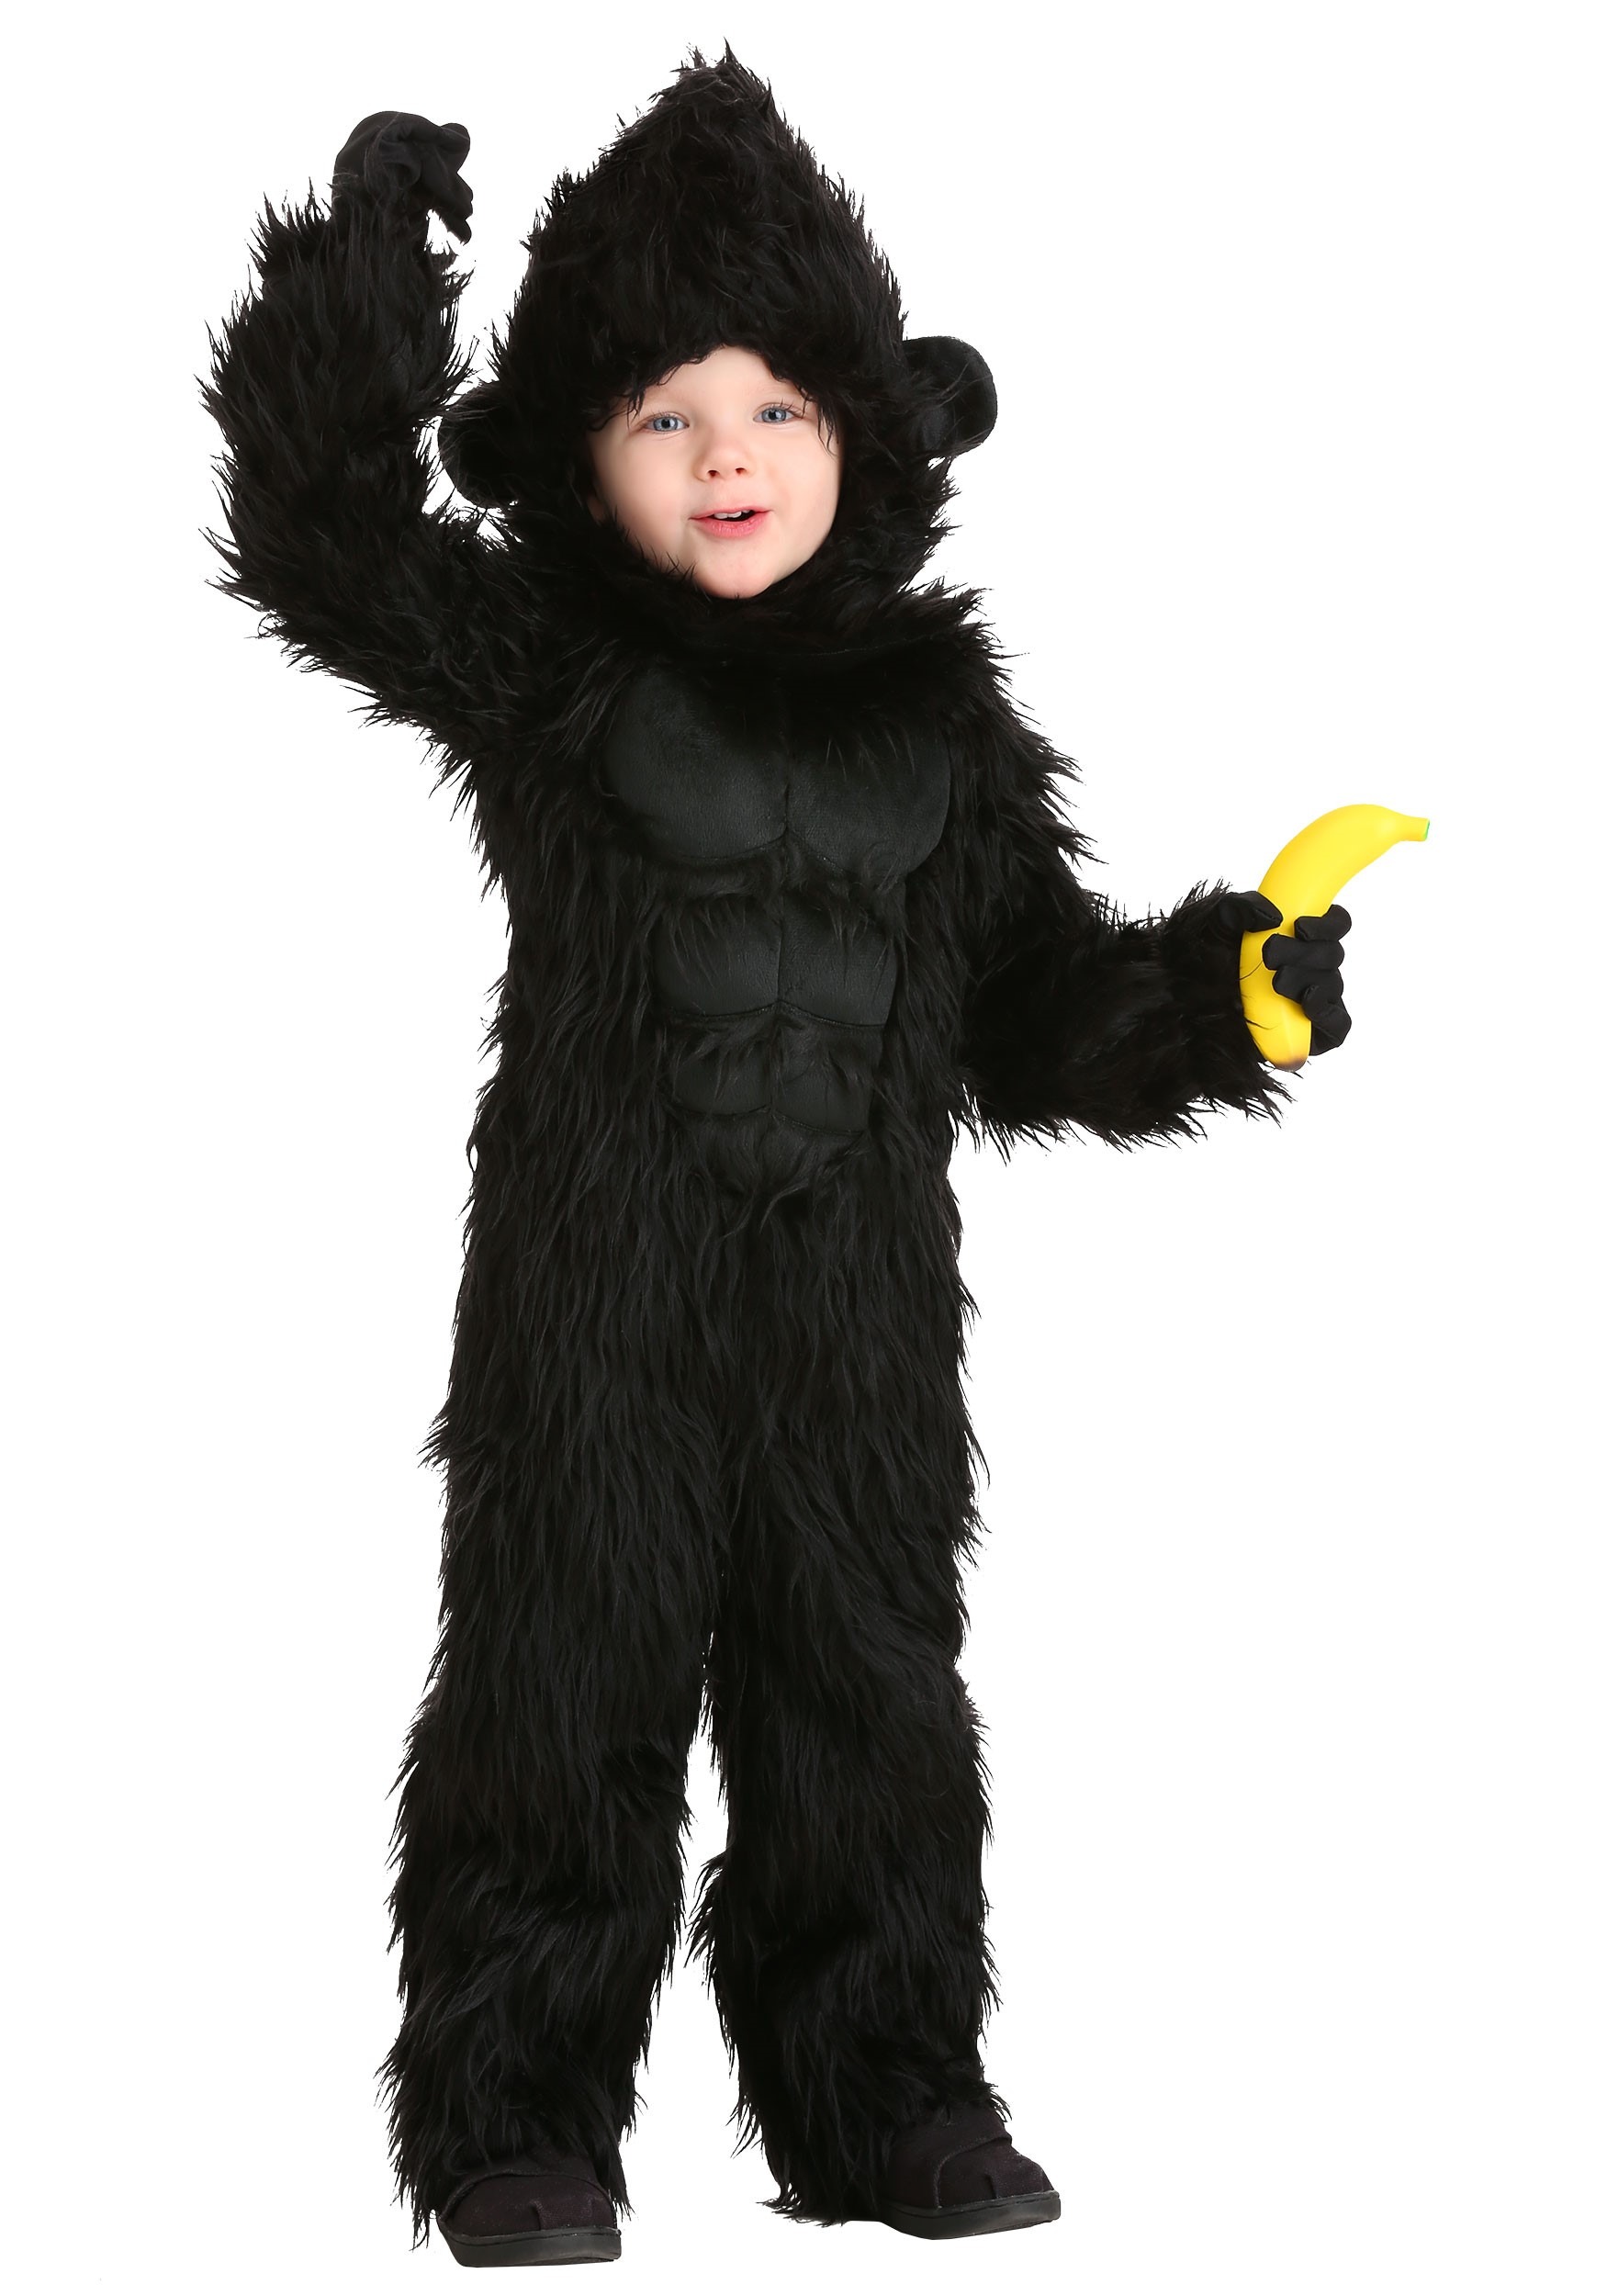 Gorilla Costume Toddler